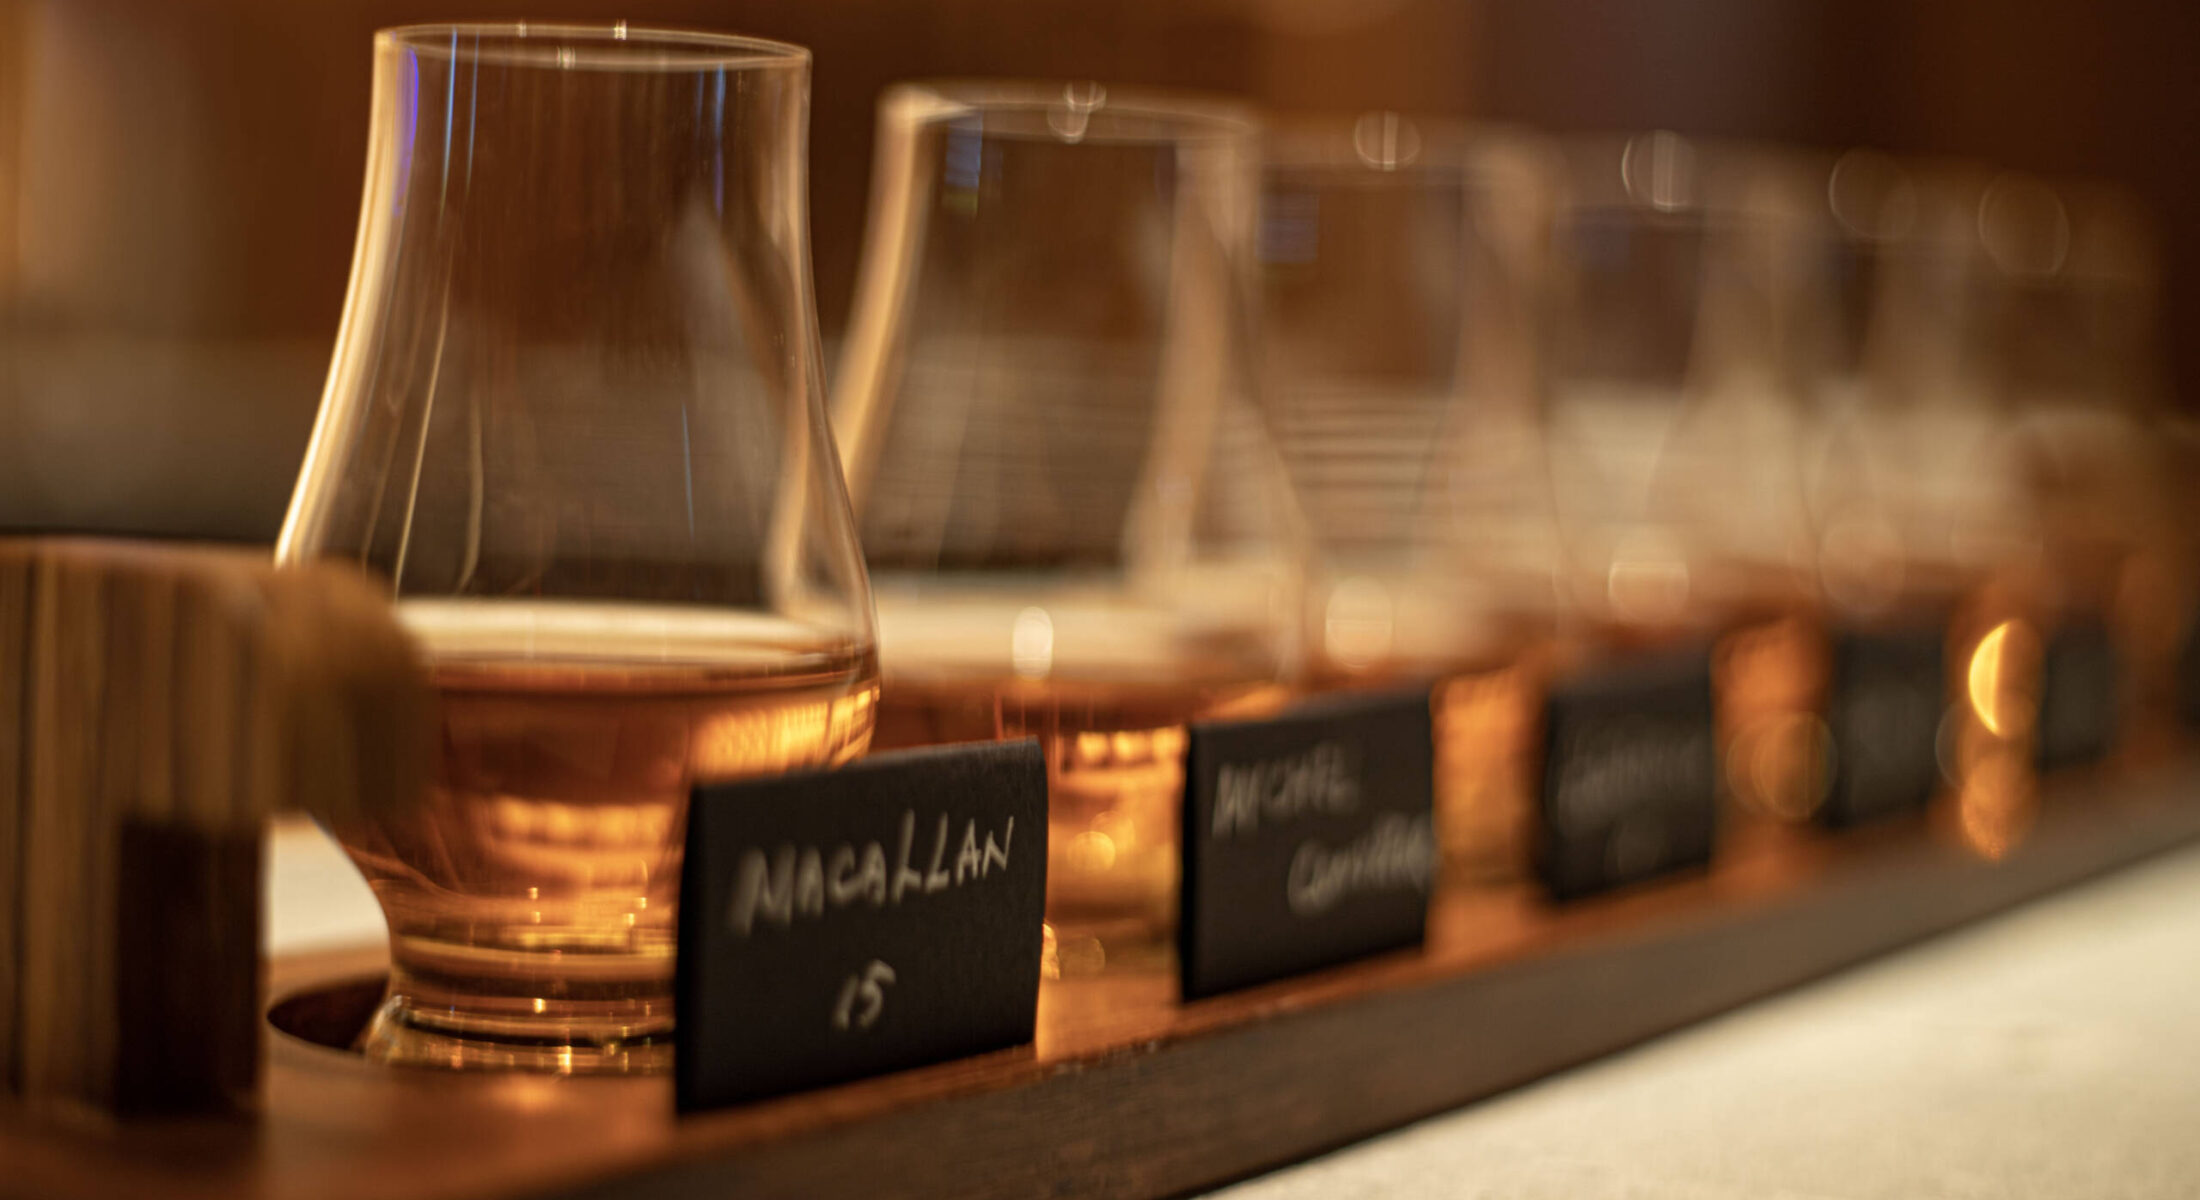 macallan whiskey at bars and restaurants - aki mgallery